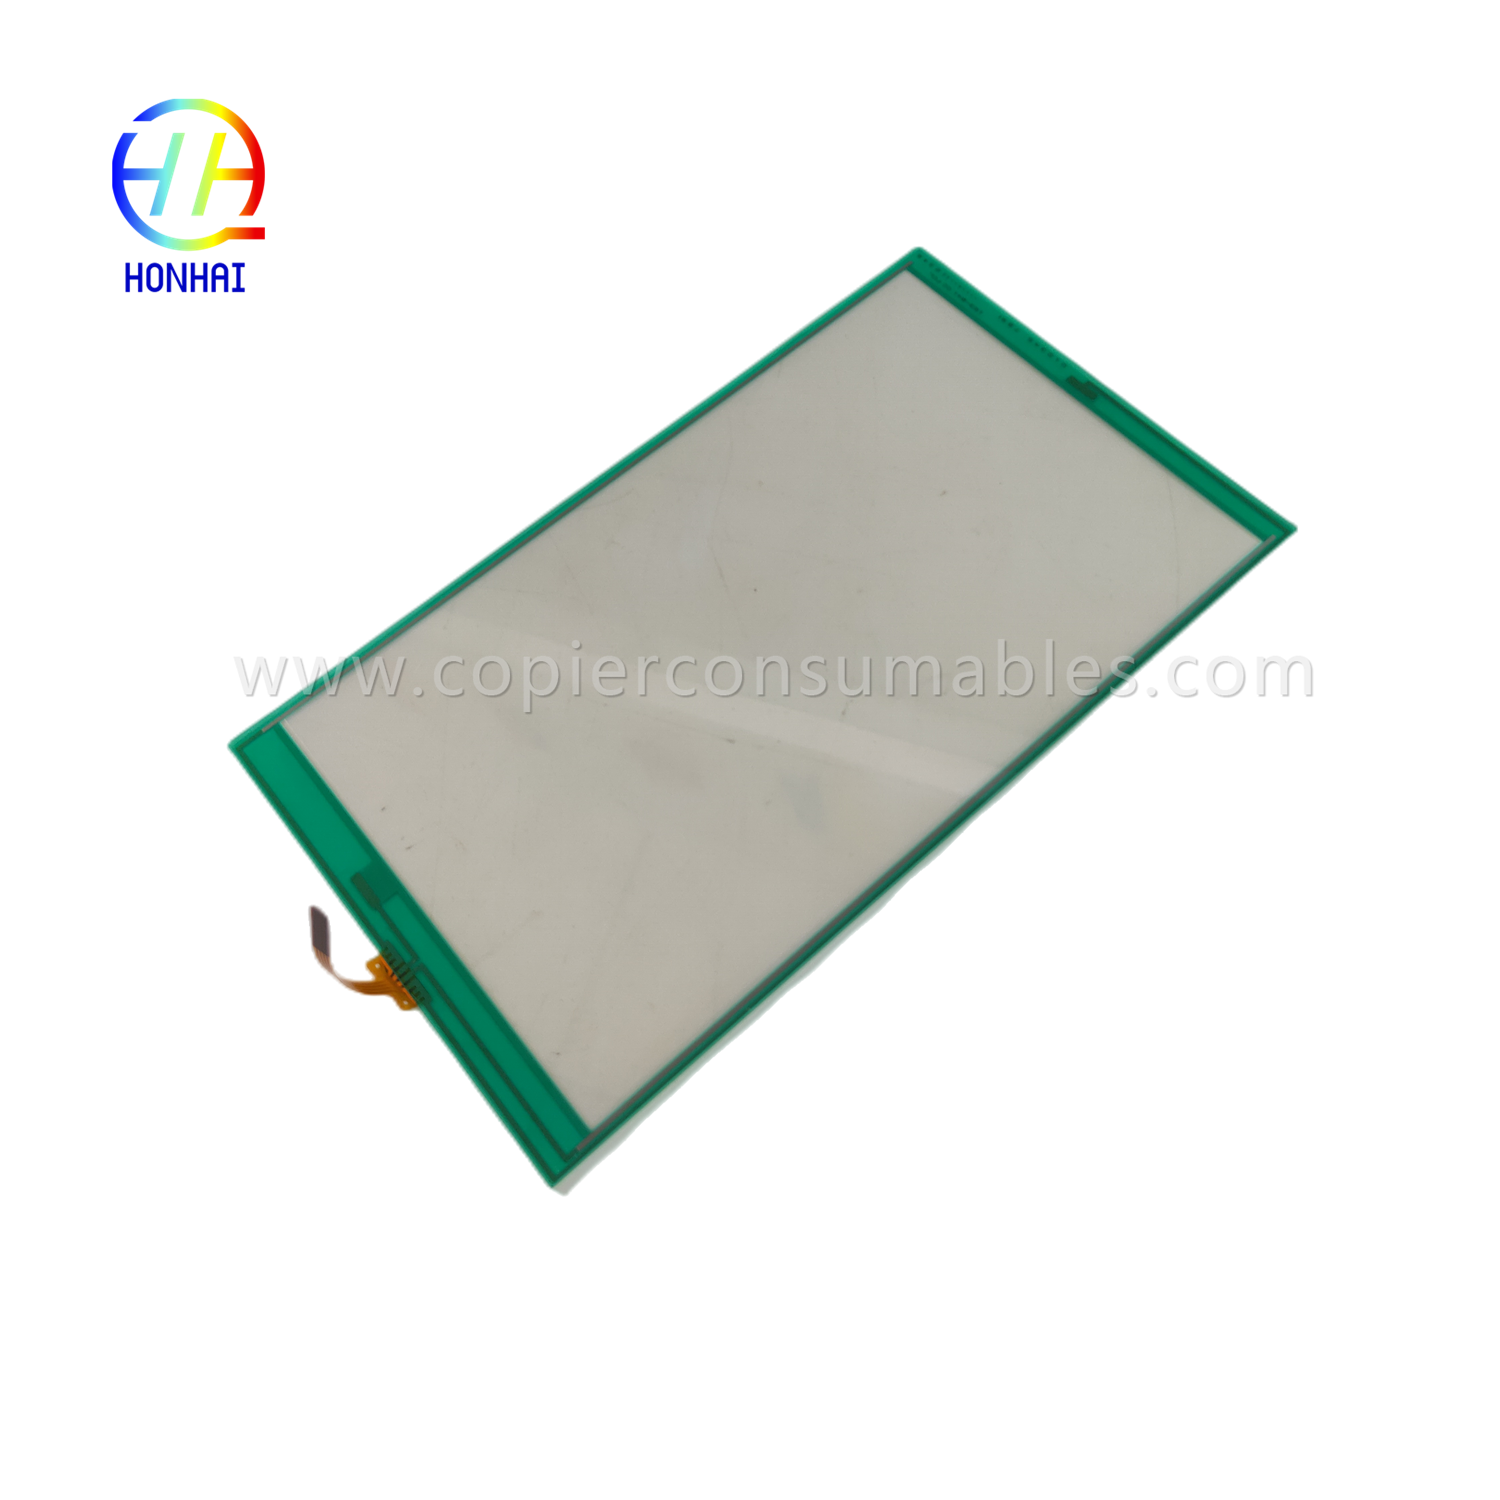 ECRAN LCD pentru Kyocera taskalfa 5052i